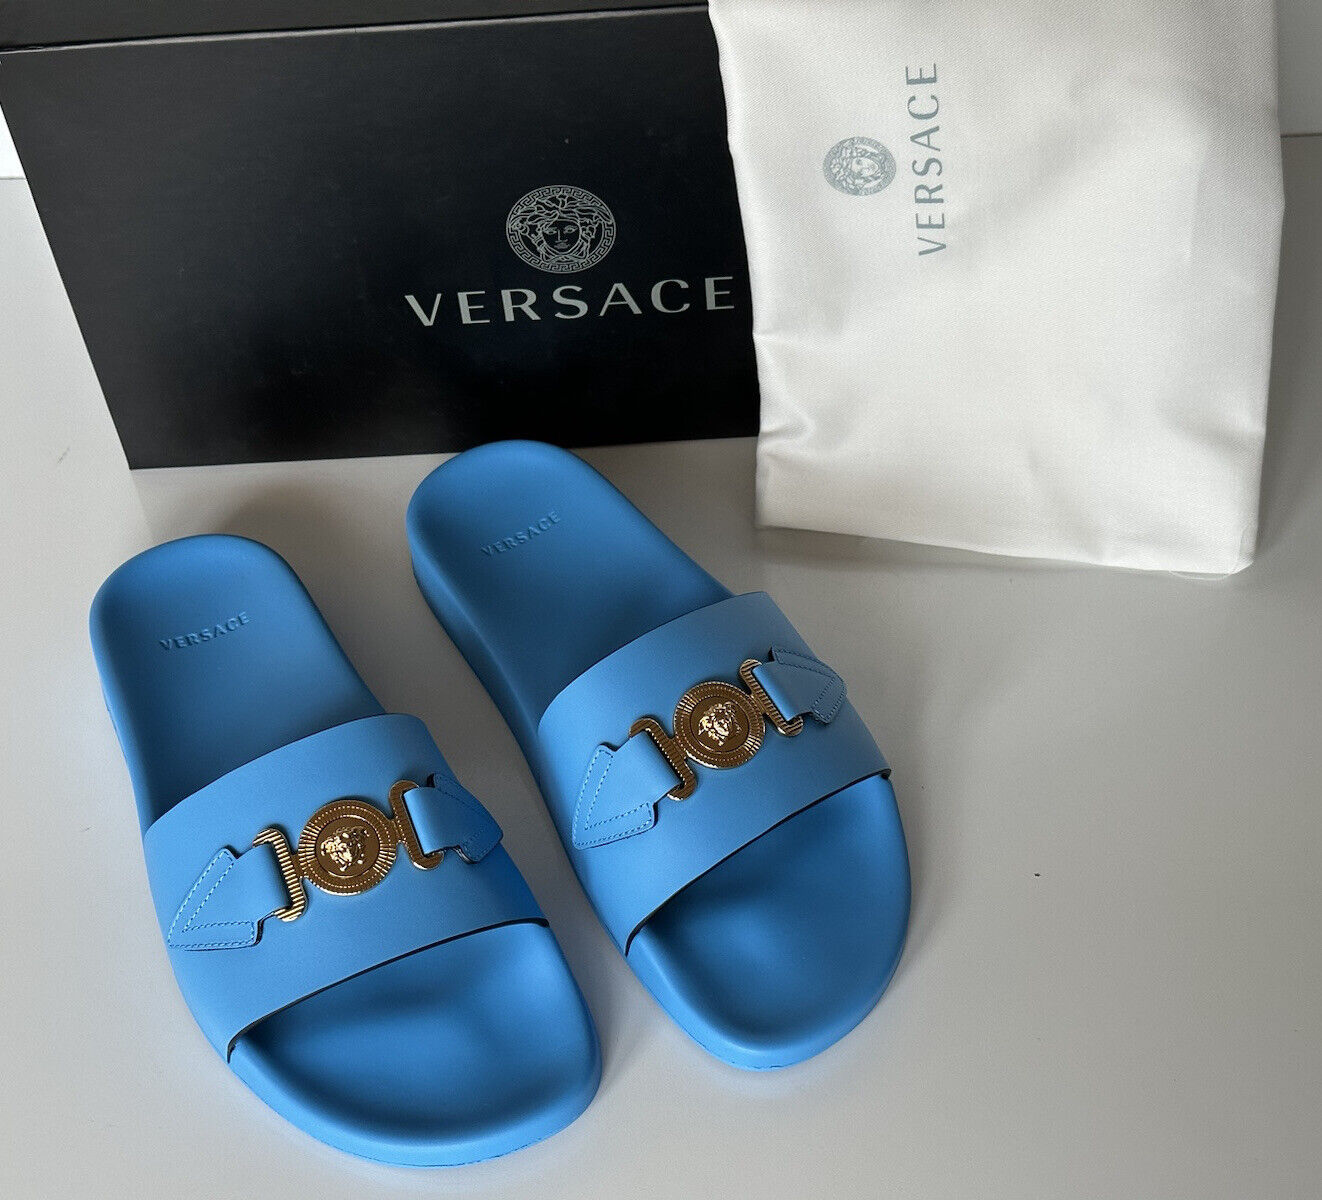 NIB 575 долларов США Versace Gold Medusa Кожаные/резиновые сандалии Синие 9 США (42) 1004983 Италия